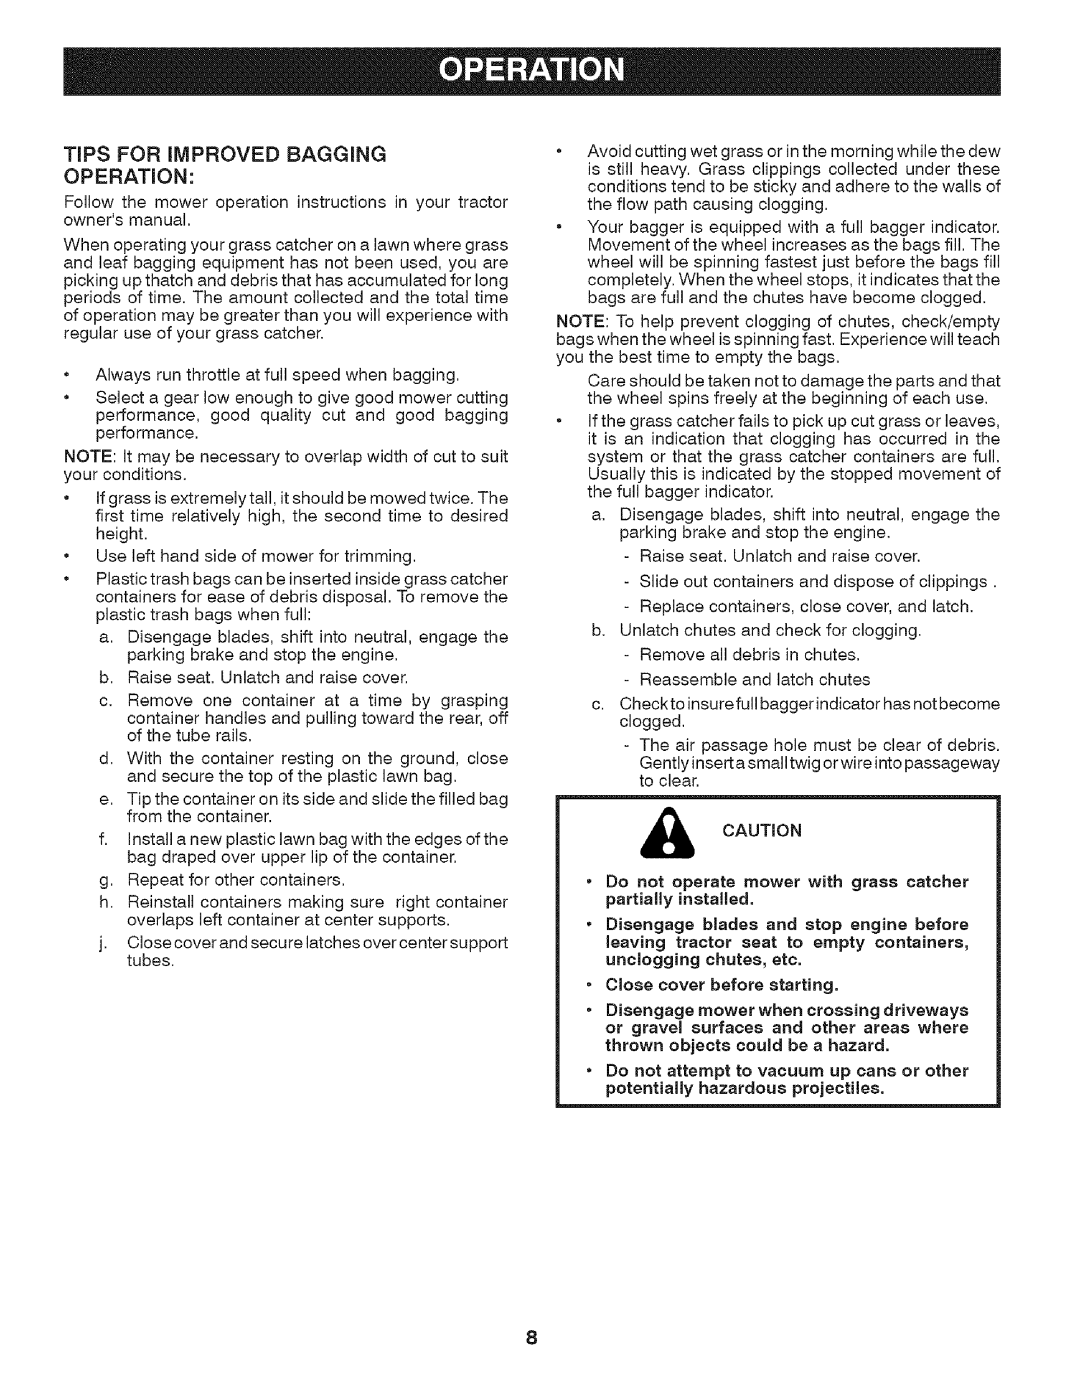 Craftsman 917.24899 owner manual TIPS FOR iMPROVED BAGGING OPERATION 